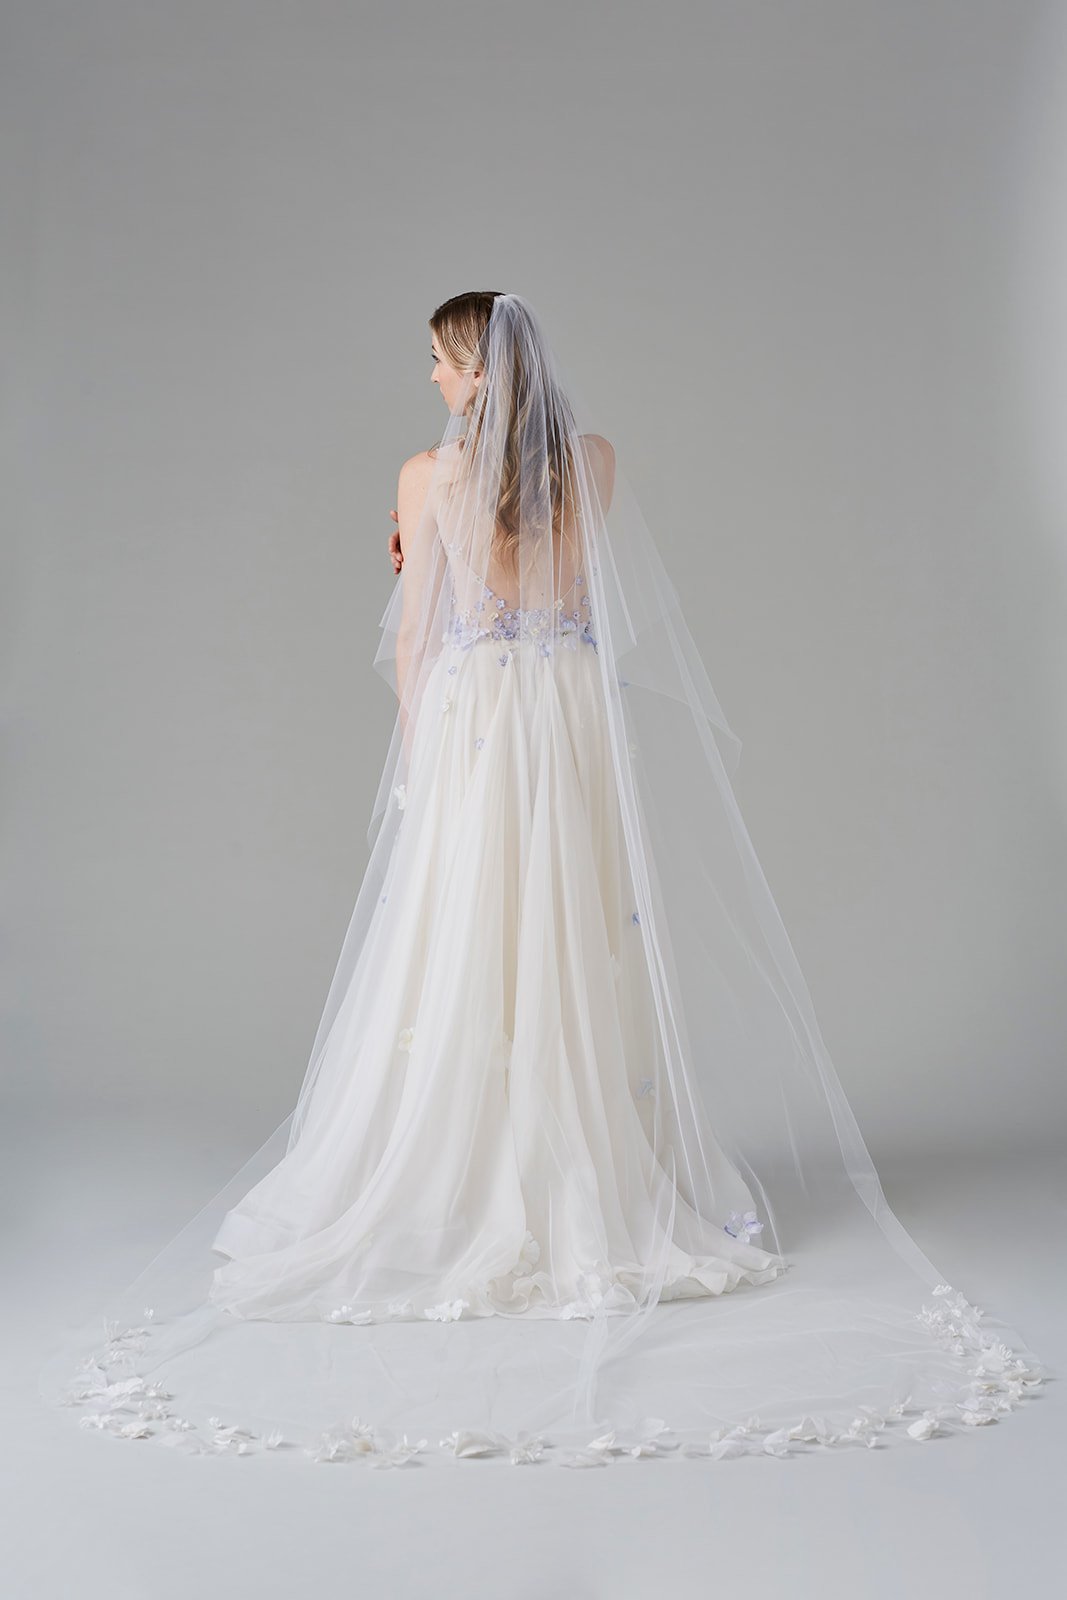 Shop Celeste New York wedding veils — Celeste New York